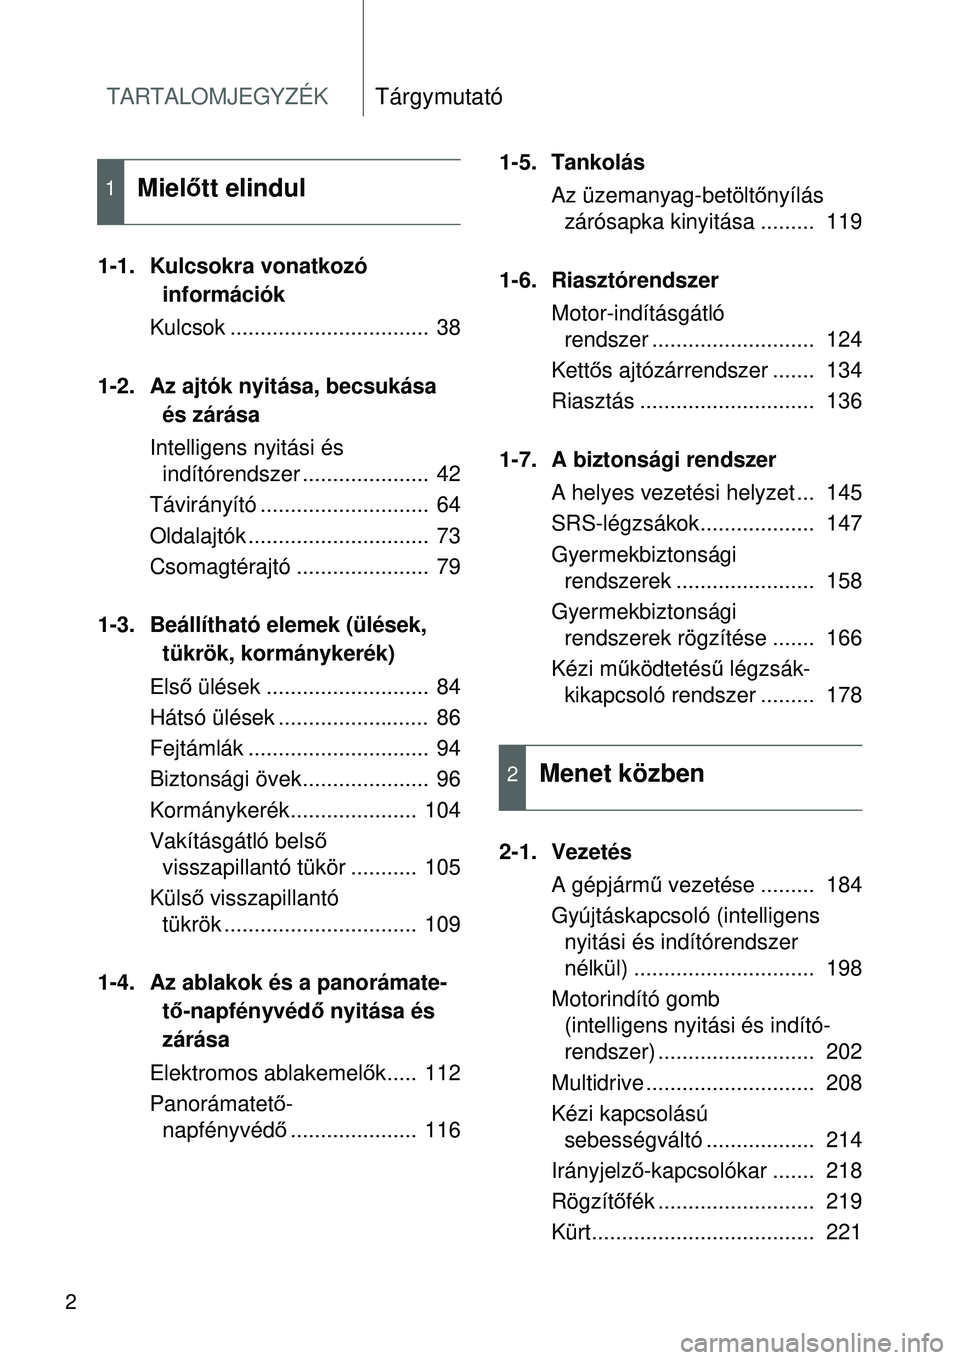 TOYOTA VERSO 2015  Kezelési útmutató (in Hungarian) TARTALOMJEGYZÉKTárgymutató
2
1-1. Kulcsokra vonatkozó információk
Kulcsok .................................  38
1-2. Az ajtók nyitása, becsukása  és zárása
Intelligens nyitási és  indít